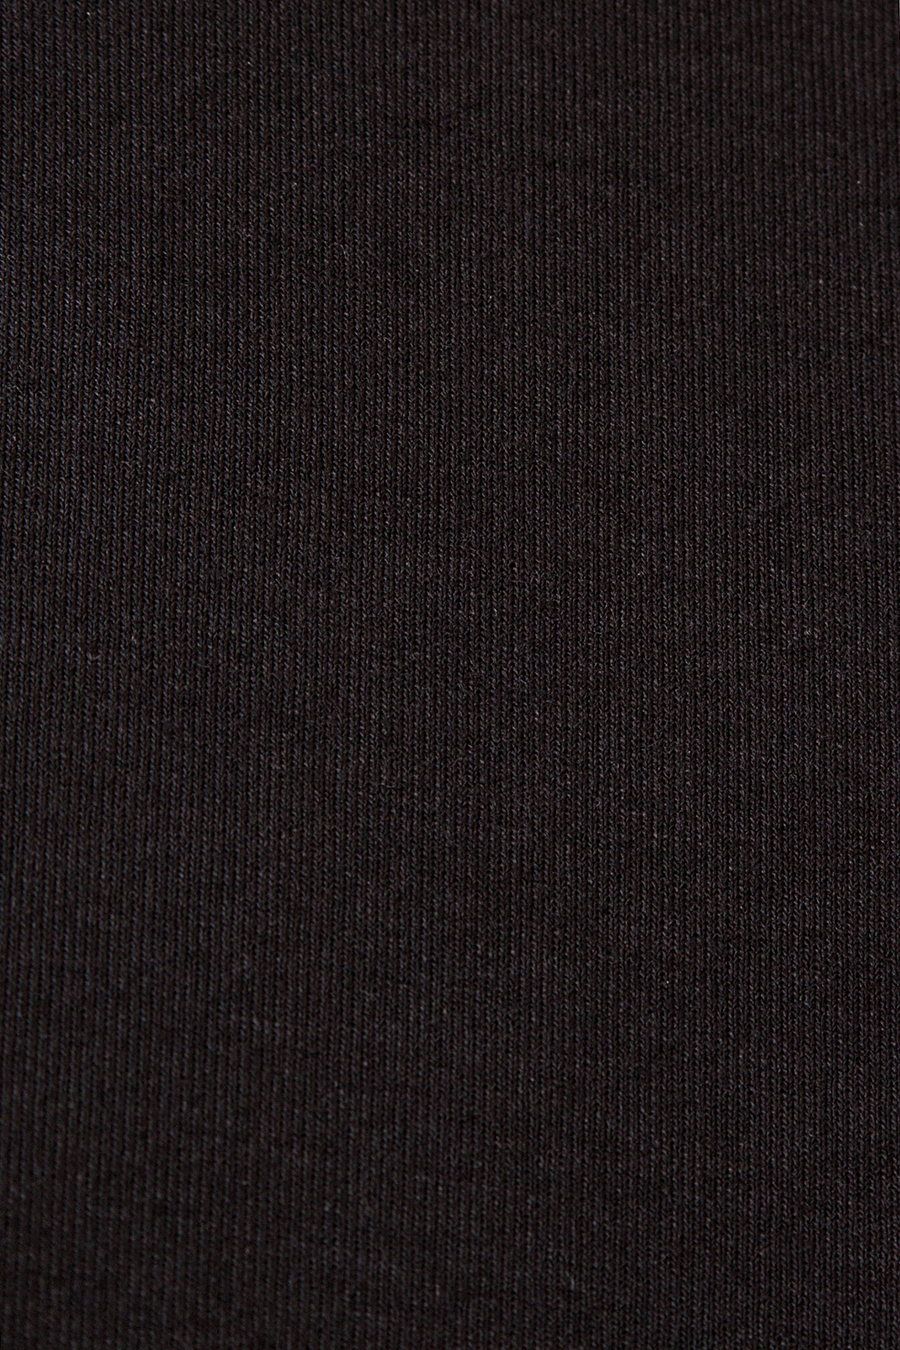 Блуза черная 5788 большого размера